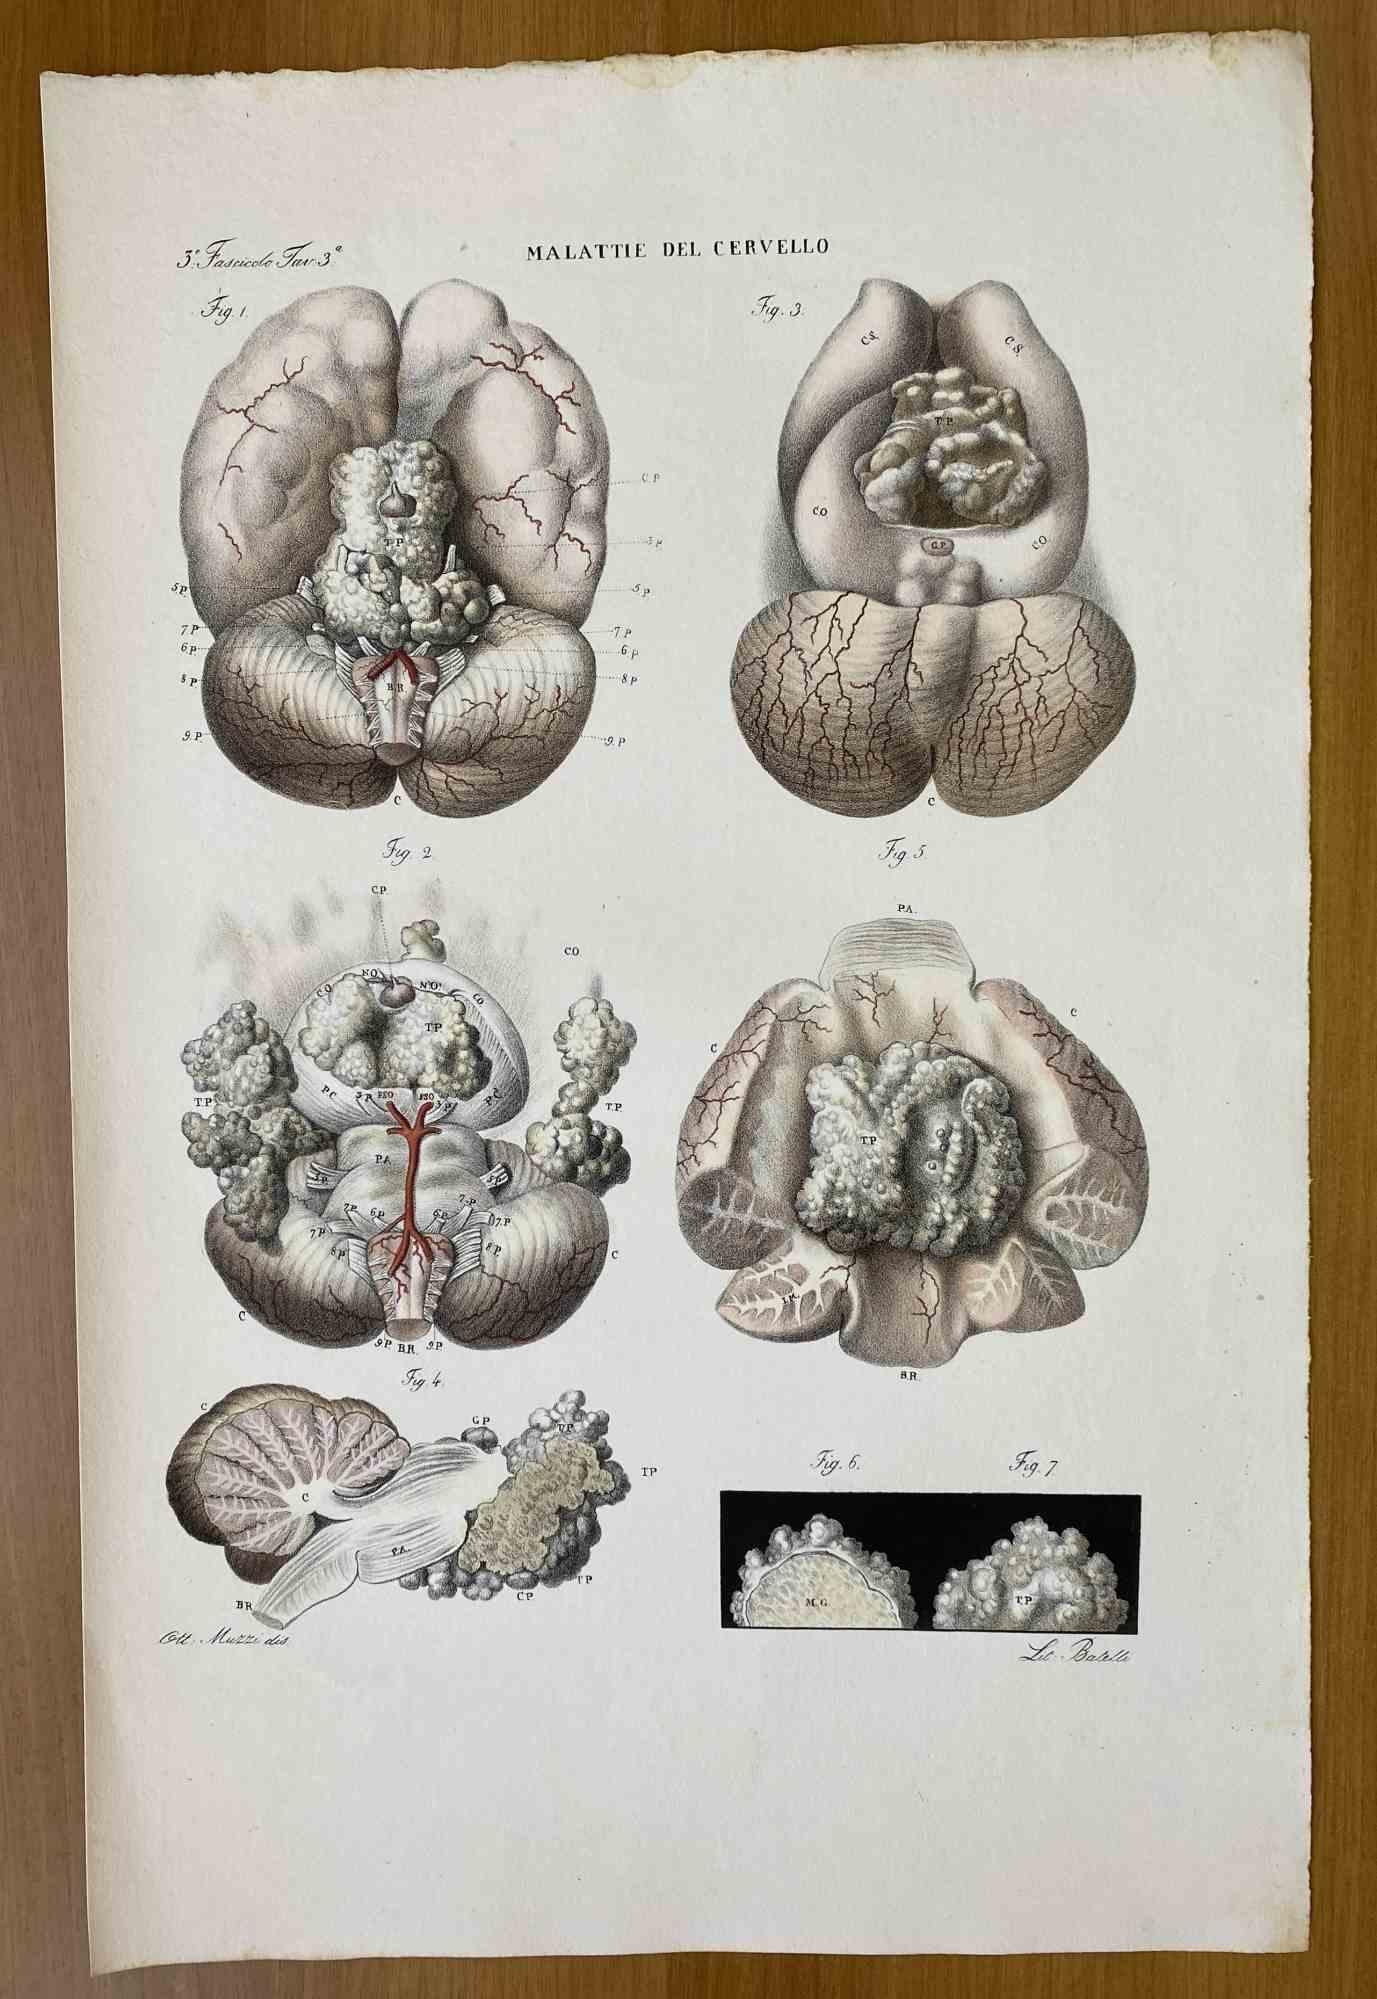 Brain Diseases ist eine handkolorierte Lithographie von Ottavio Muzzi für die Ausgabe von Antoine Chazal, Human Anatomy, Printers Batelli and Ridolfi, 1843.

Das Werk gehört zum Atlante generale della anatomia patologica del corpo umano von Jean